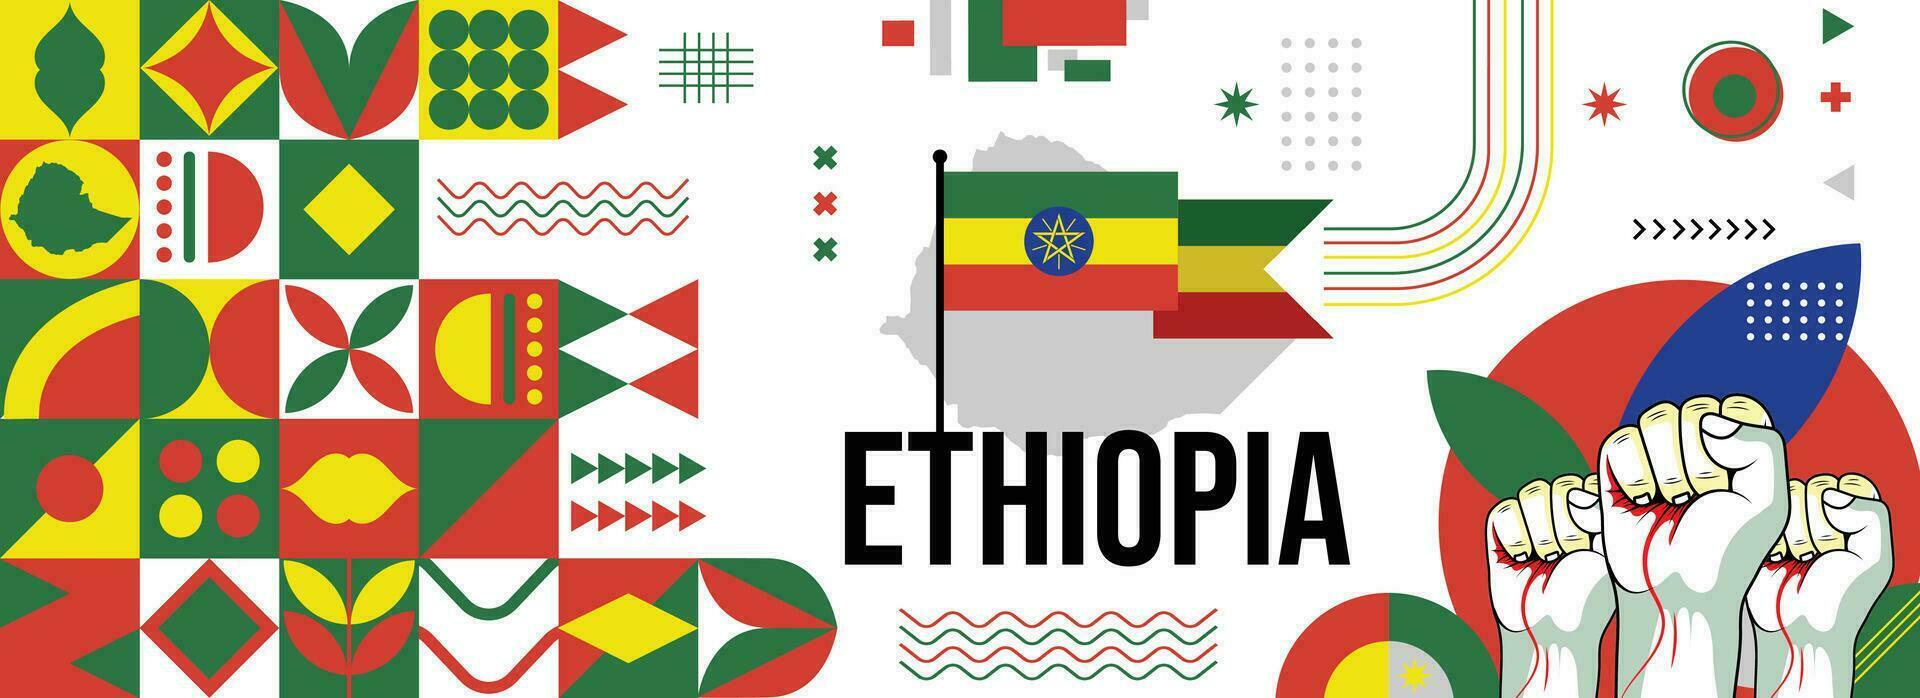 Ethiopië nationaal of onafhankelijkheid dag banier voor land viering. vlag en kaart van Ethiopië met verheven vuisten. modern retro ontwerp met typorgaphy abstract meetkundig pictogrammen. vector illustratie